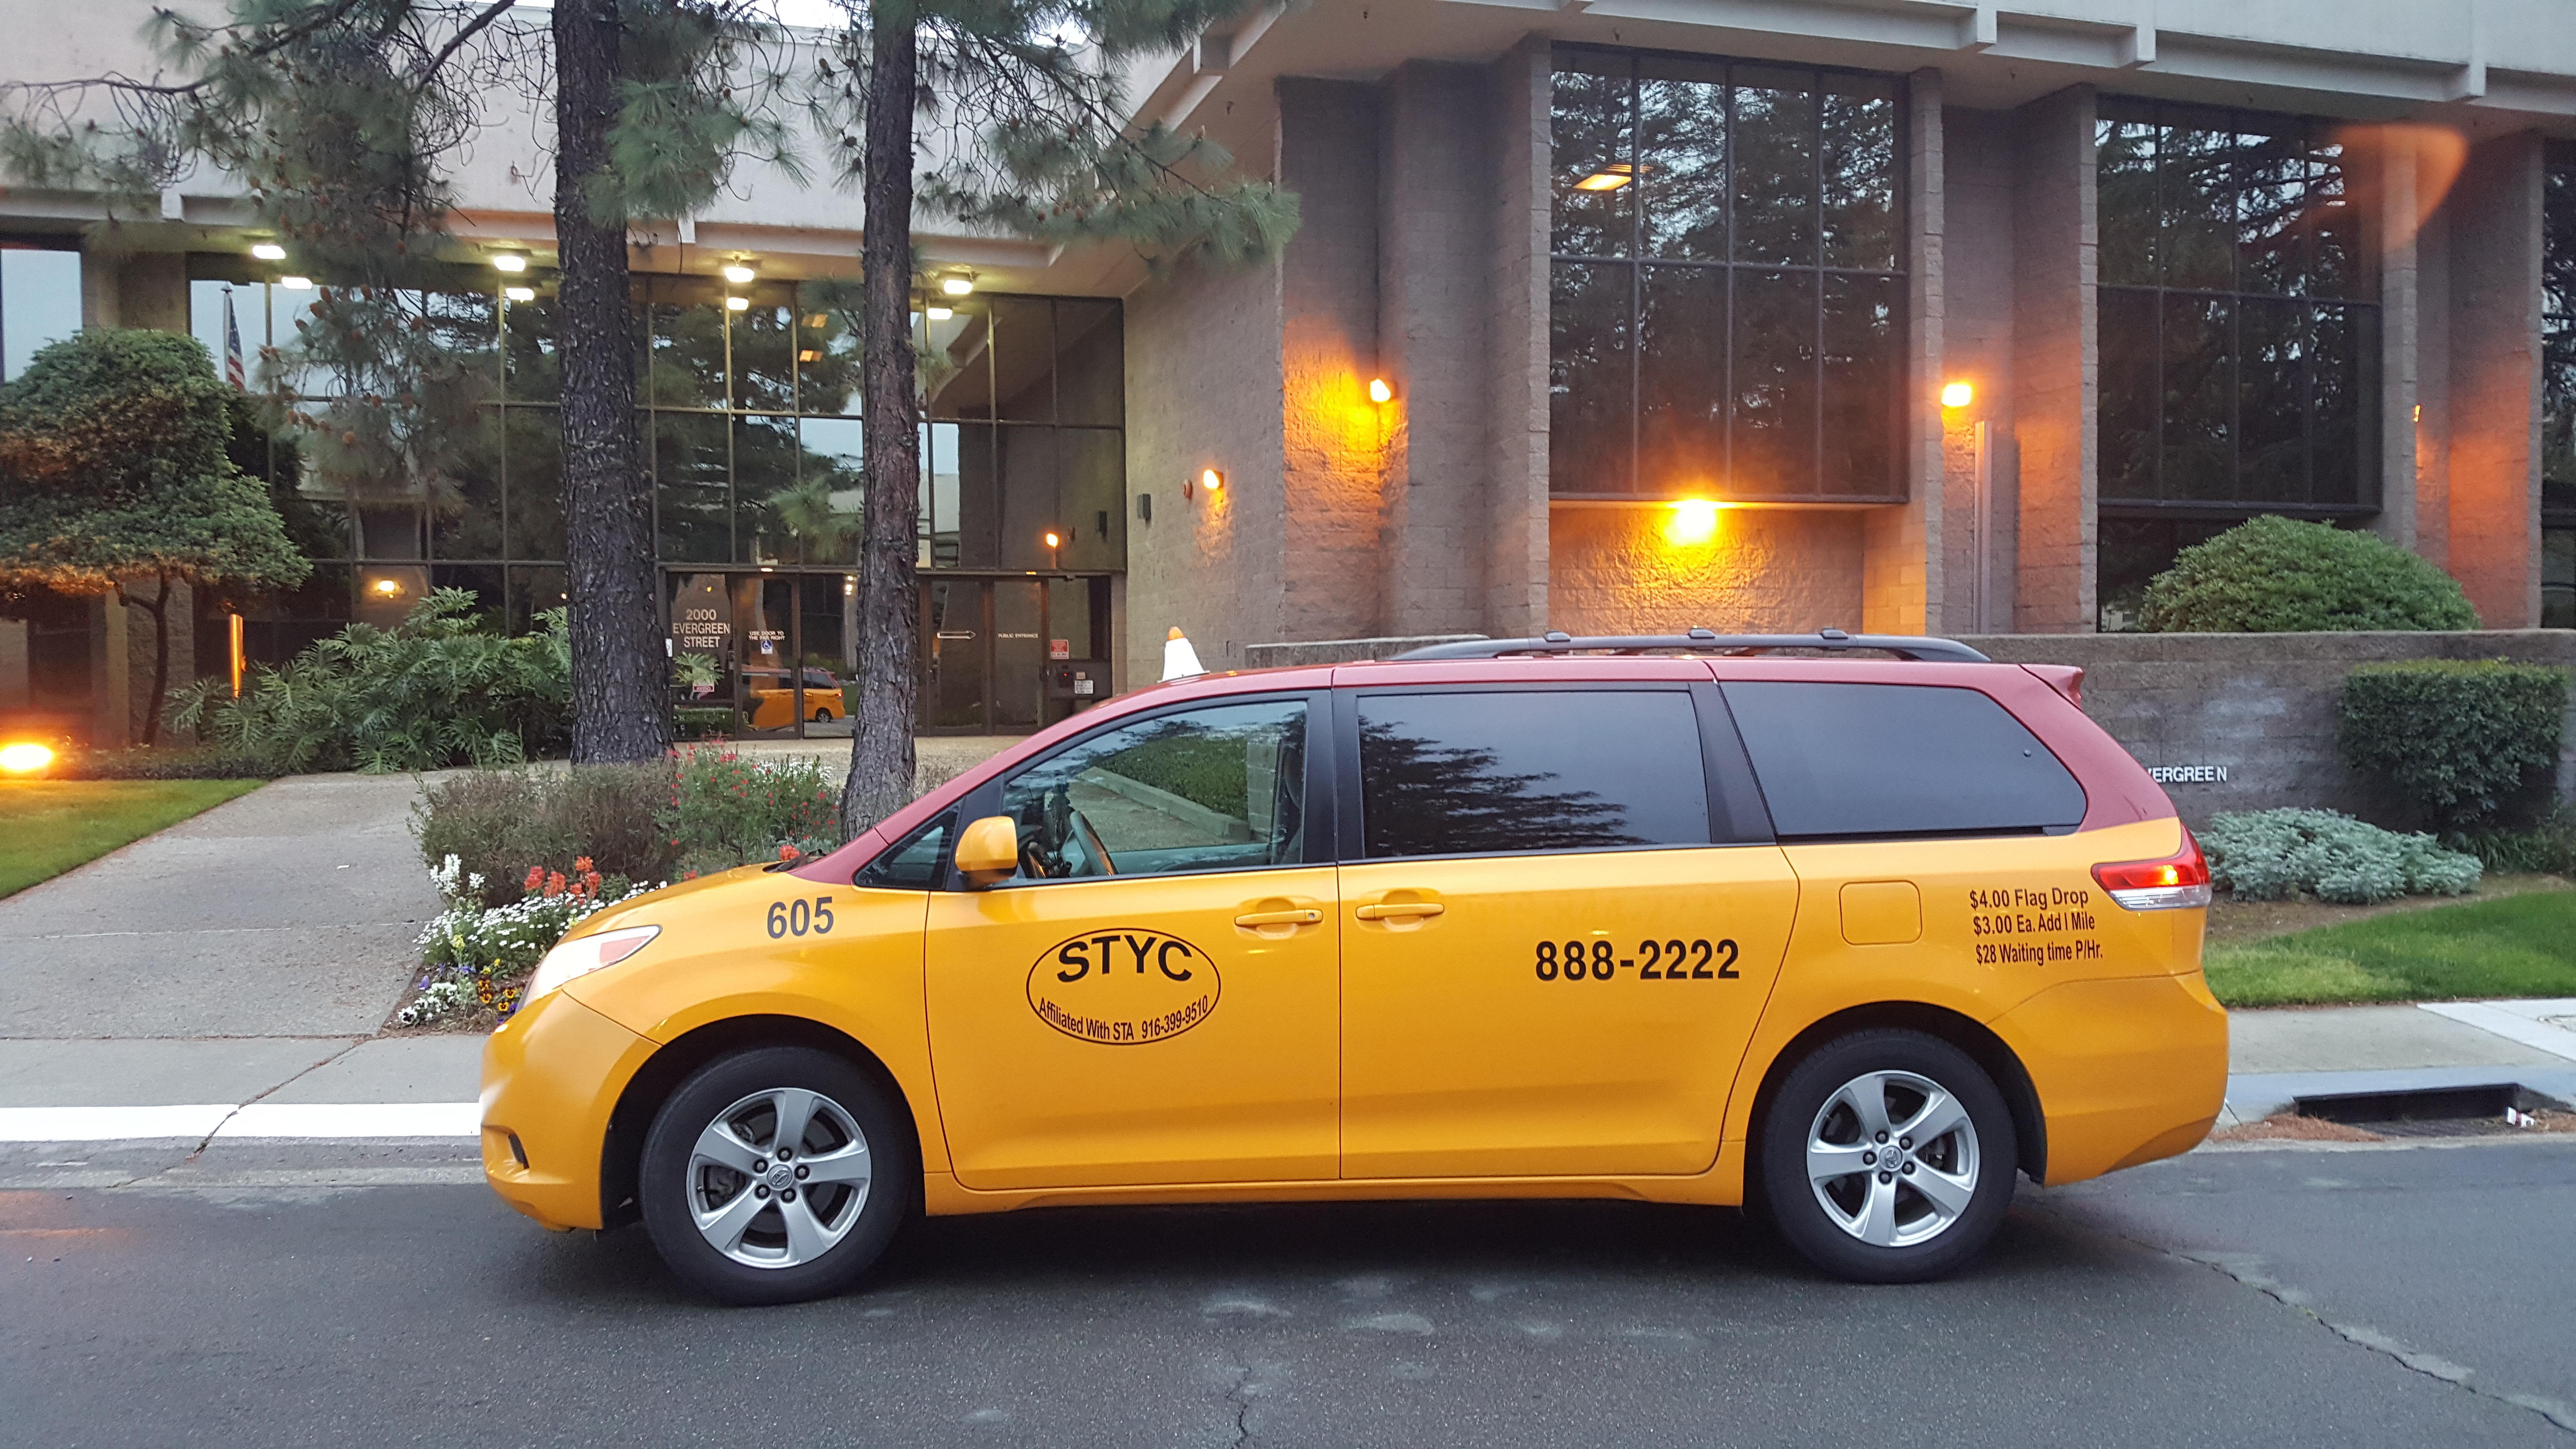 Sacramento Taxi Yellow Cab Photo